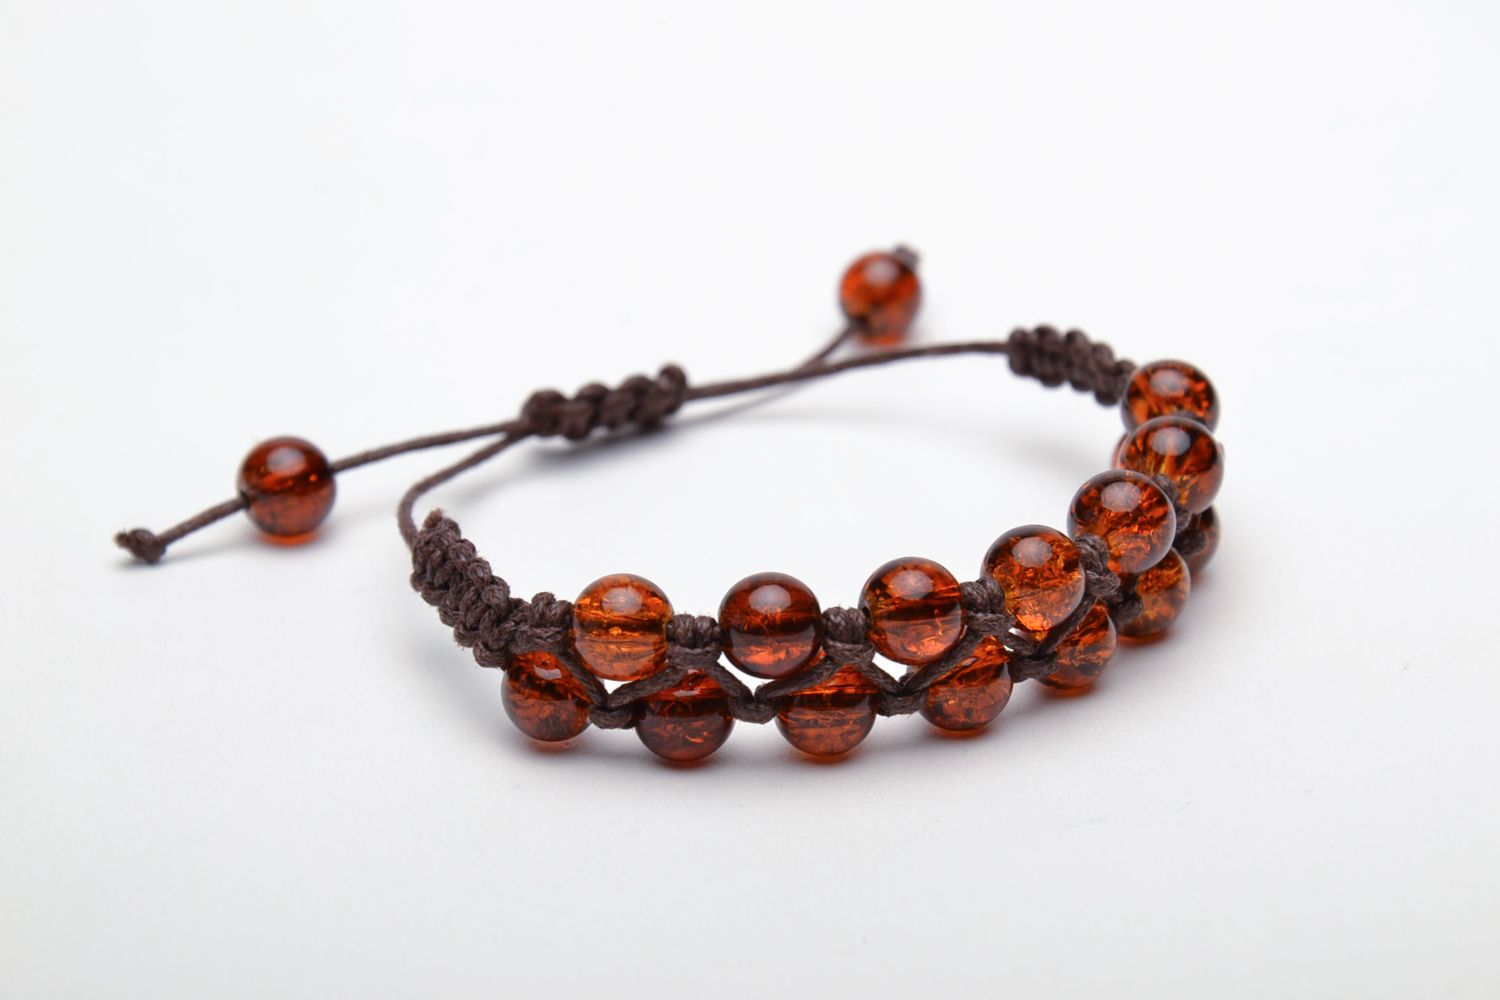 Wrist bracelet made of amber-like beads photo 3